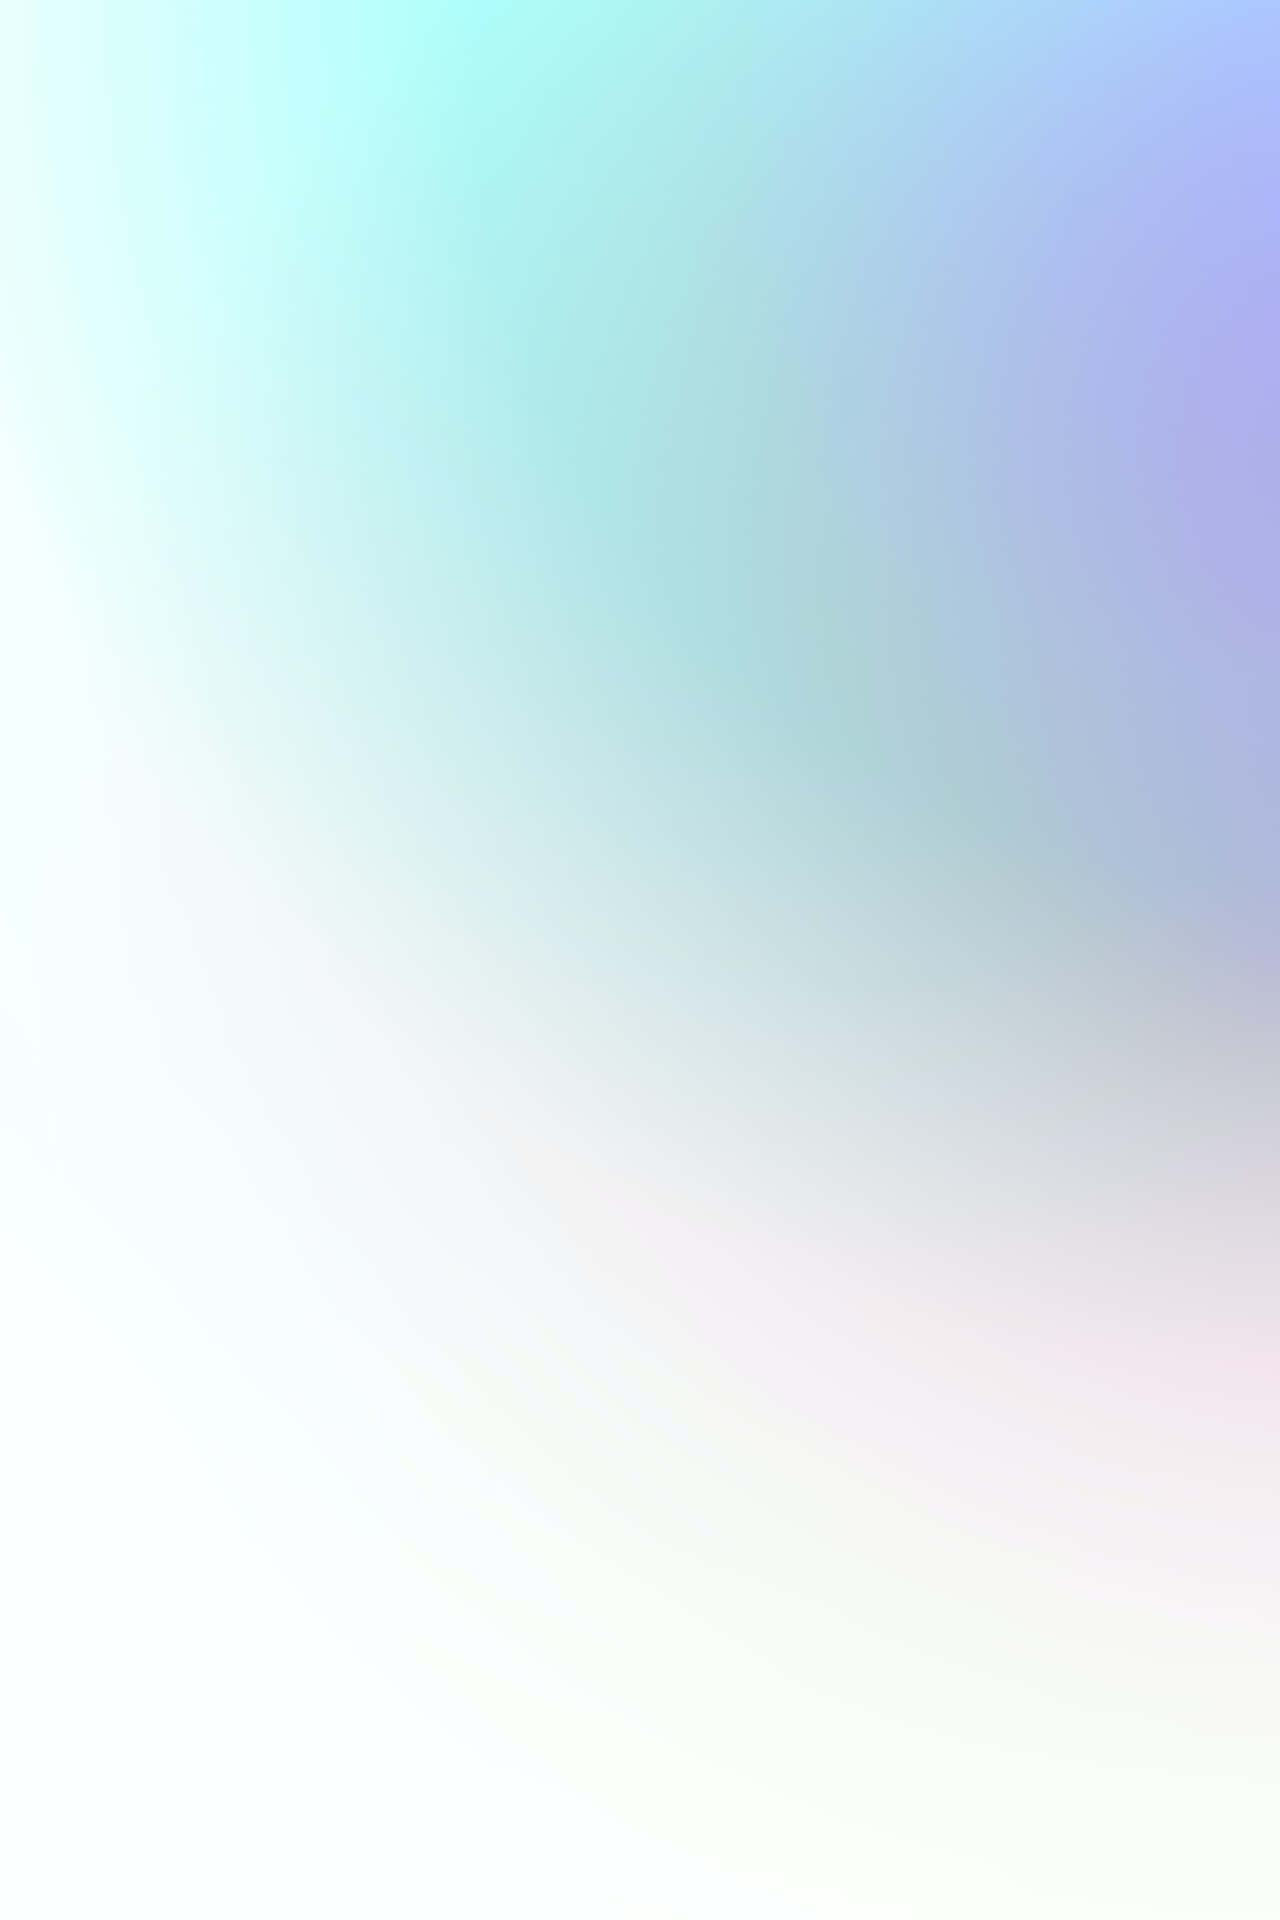 Enblå Og Hvid Abstrakt Baggrund Med En Regnbue.